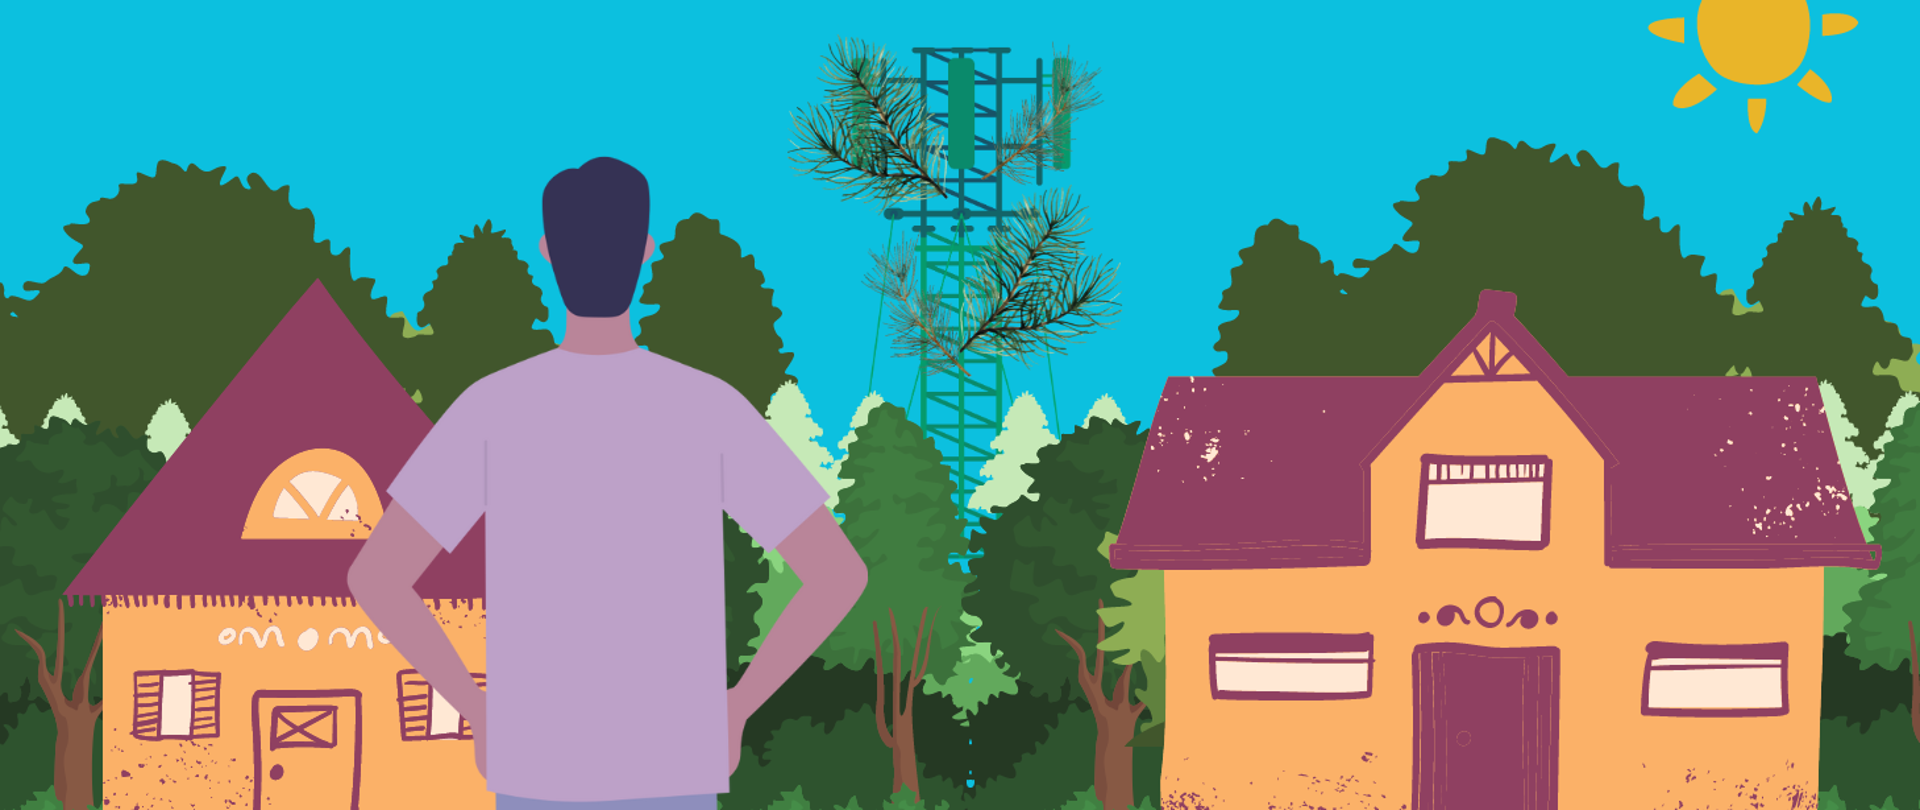 Mężczyzna stoi plecami do widza trzymając się pod boki. patrzy na niewielkie domy stojące na skraju lasu i wystający ponad drzewa maszt telekomunikacyjny ozdobiony gałęziami.